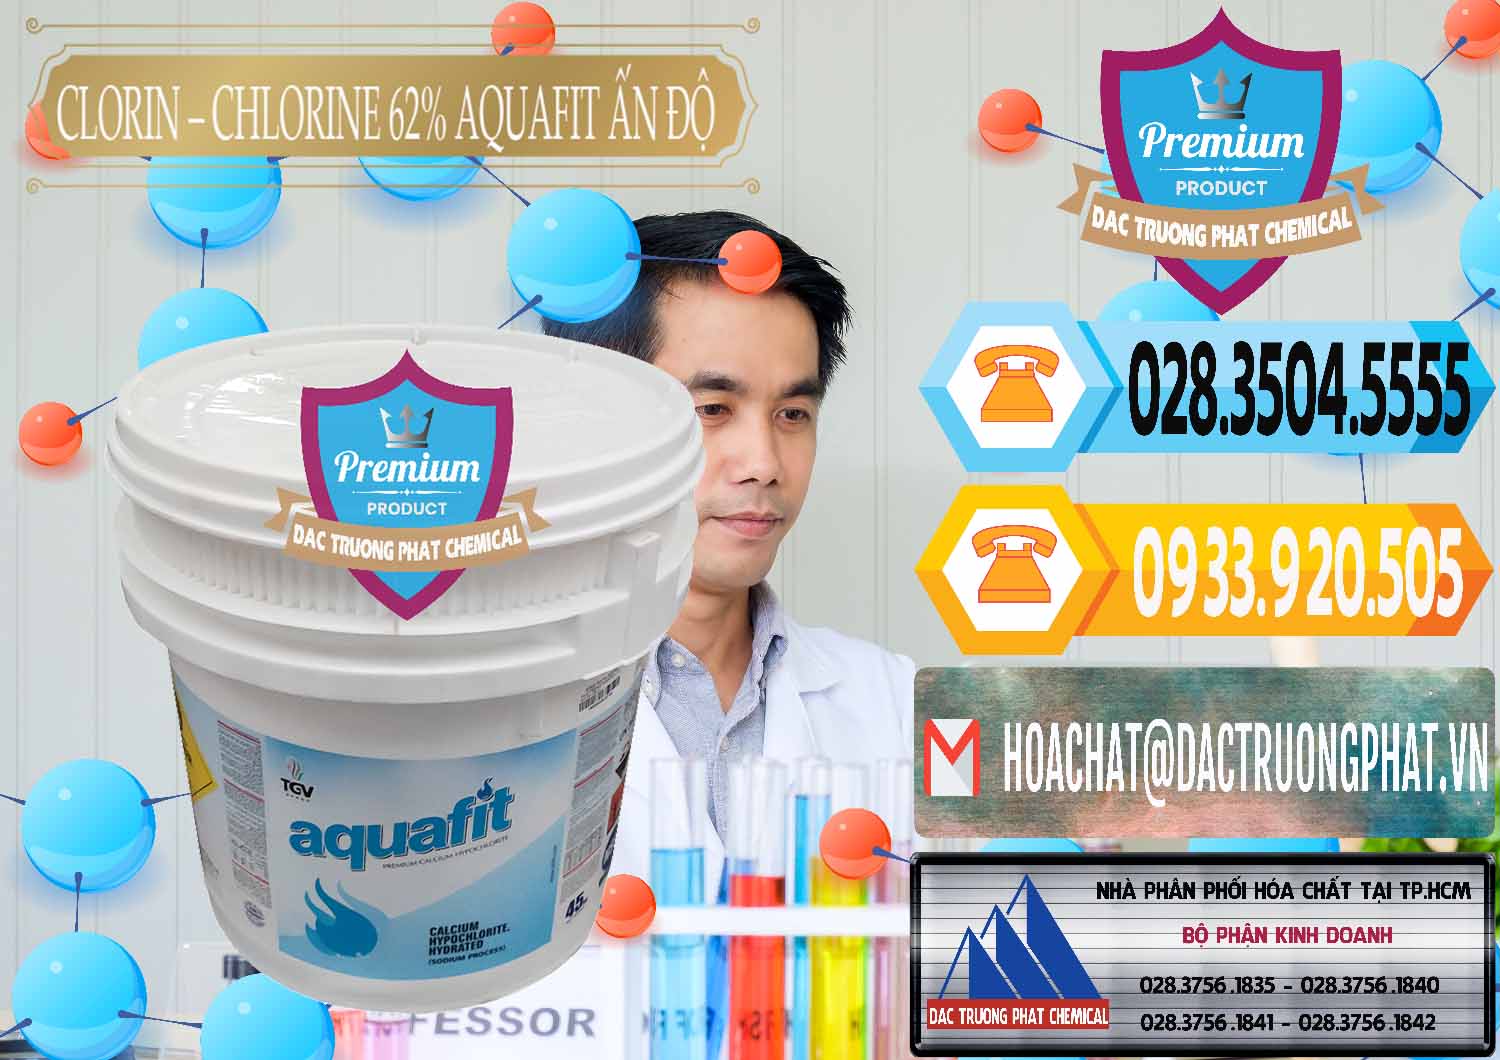 Cty chuyên bán - cung ứng Clorin - Chlorine 62% Aquafit Thùng Lùn Ấn Độ India - 0057 - Nơi chuyên phân phối & kinh doanh hóa chất tại TP.HCM - hoachattayrua.net